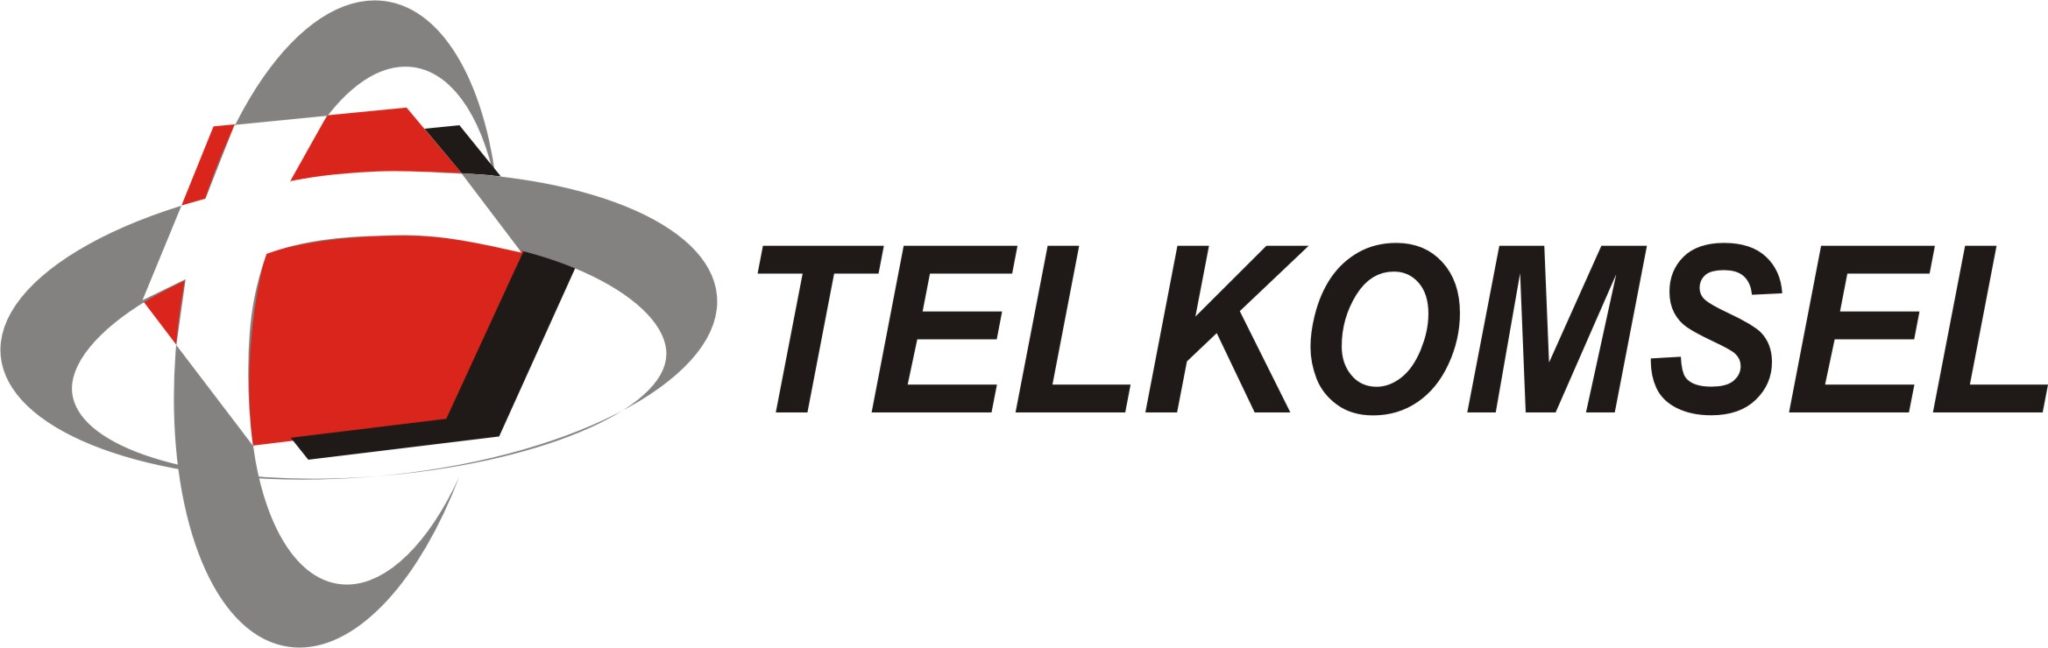 logo-telkomsel | Bali in a nutshell